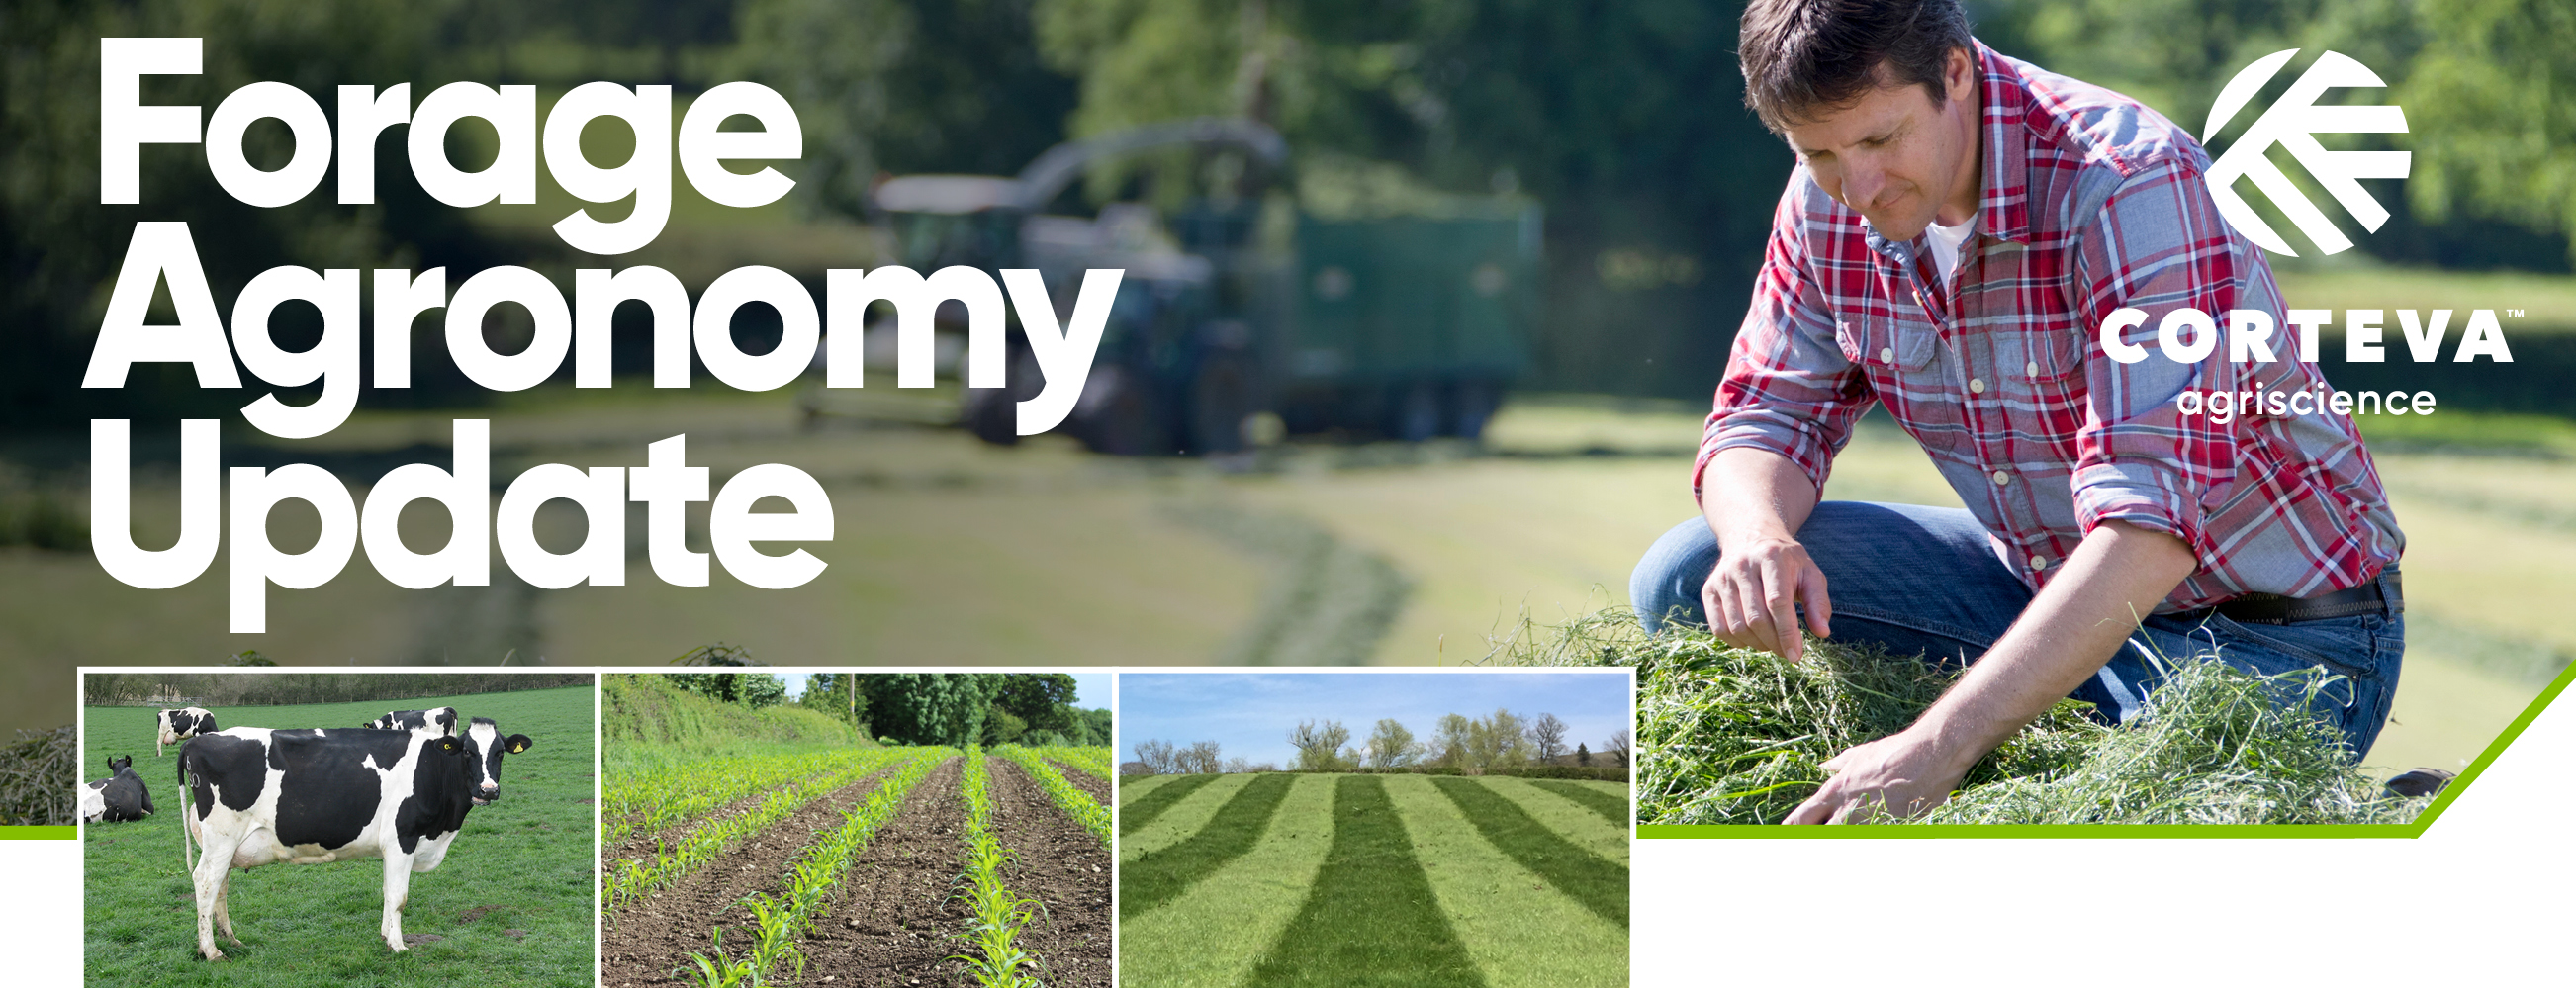 Forage Agronomy Update header